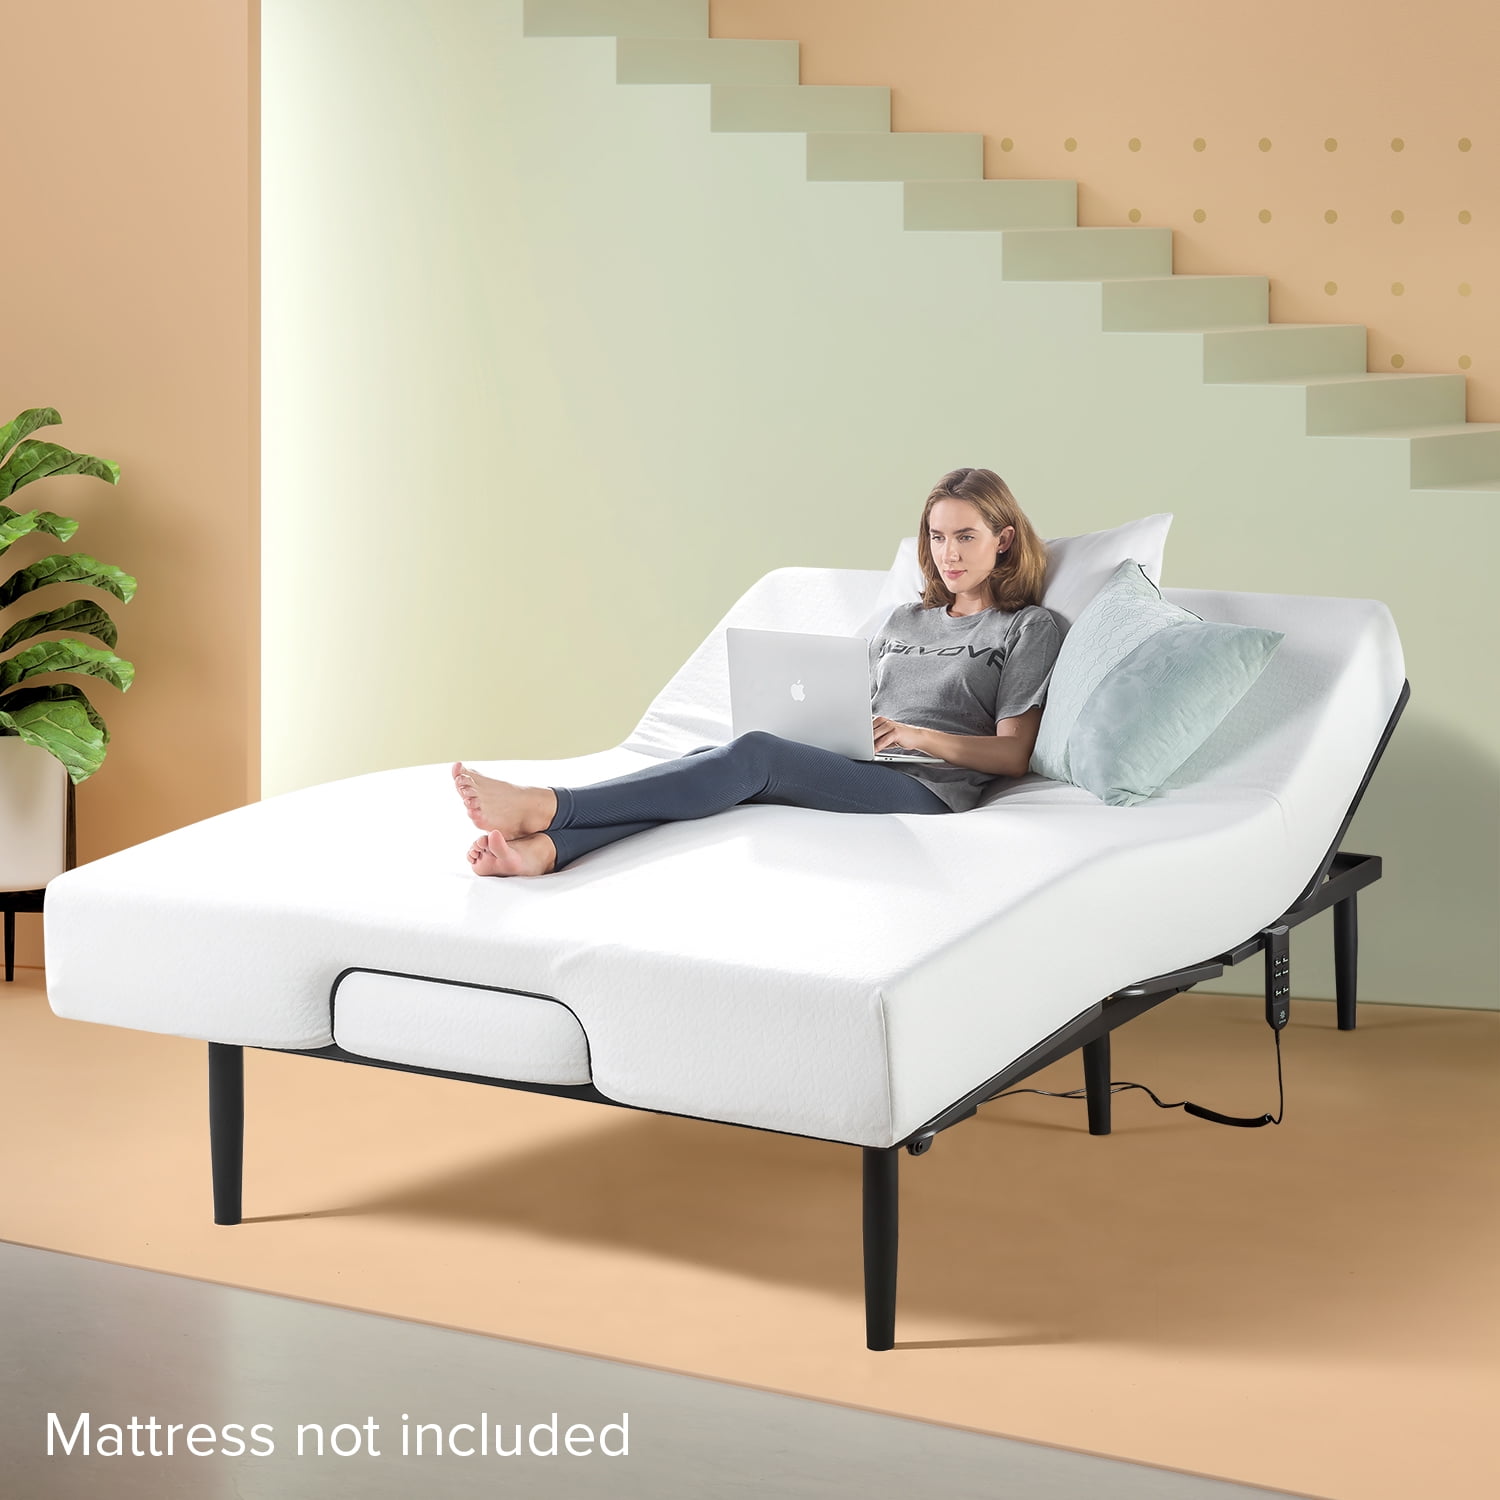 Zinus Jared Adjustable Black Metal Bed, Adjustable Bed Frame Queen With Mattress